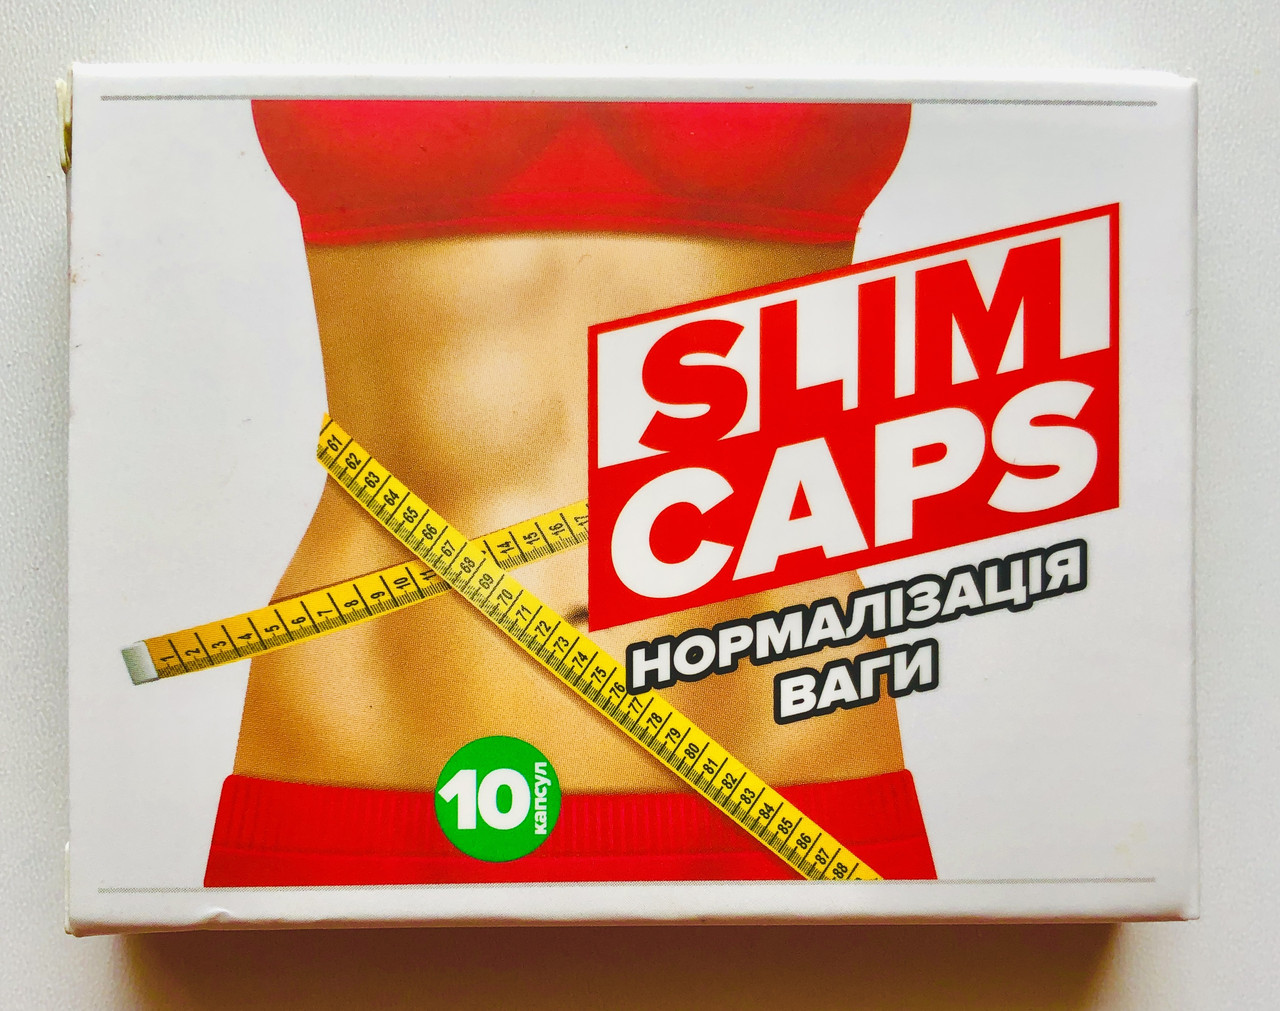 SlimCaps (СлімКапс) - Капсули для схуднення, засіб для зниження і нормалізації ваги слим капс